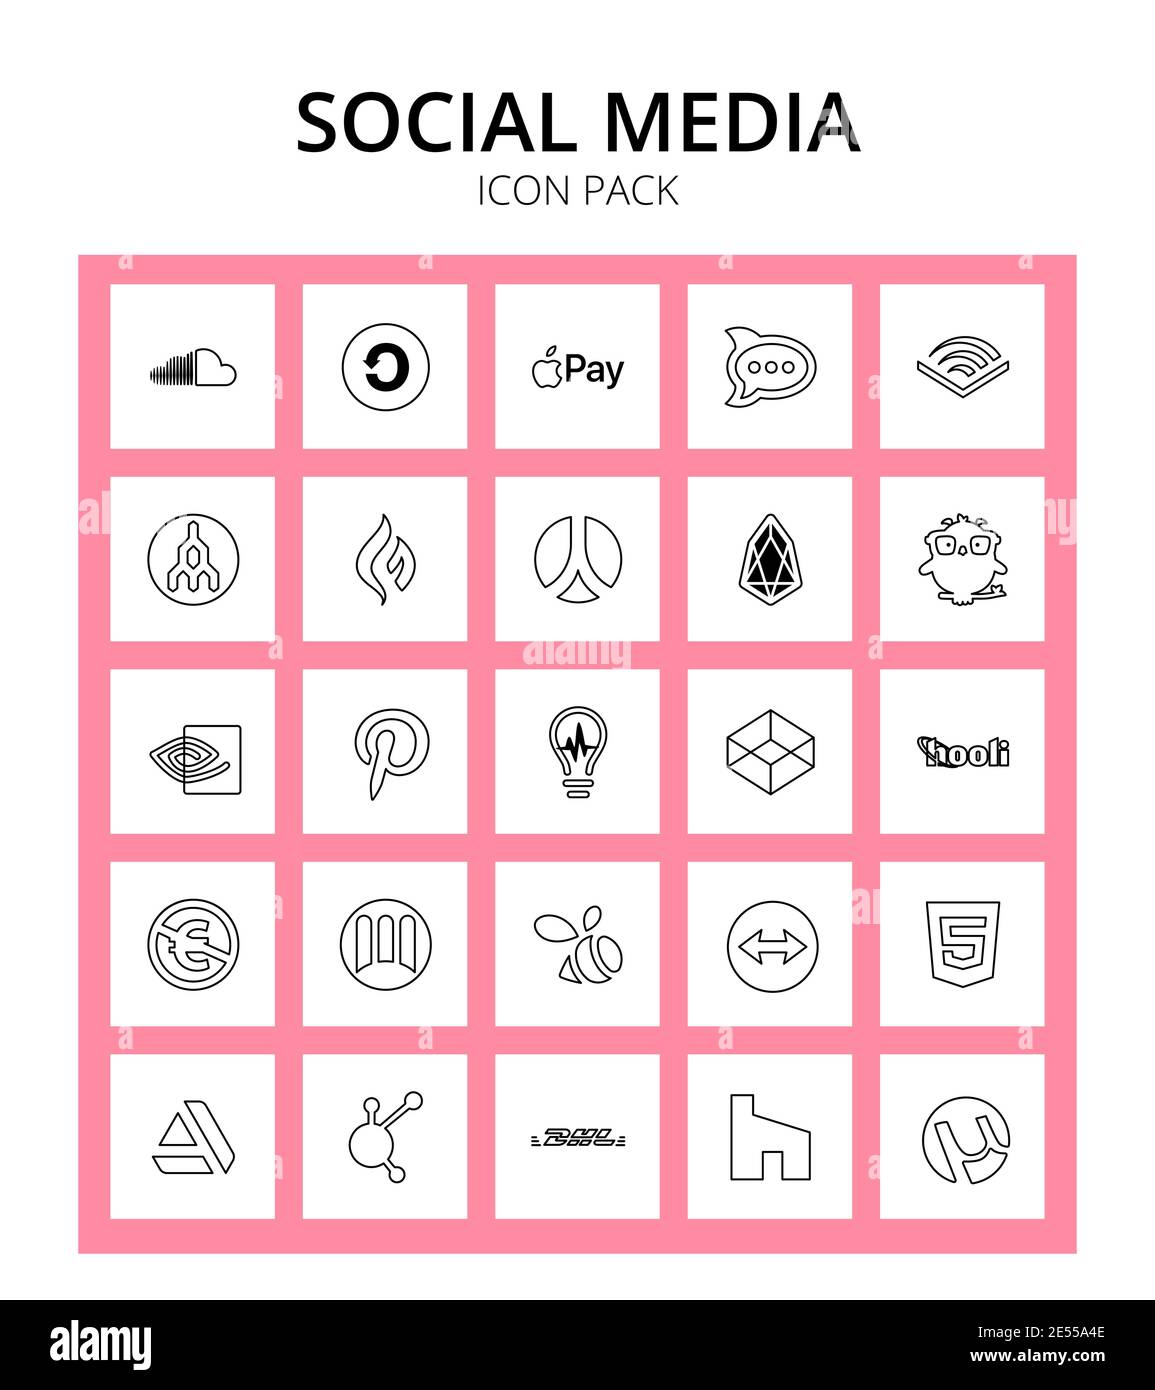 Pack of 25 Social Logo hooli, medapps, megaport, pinterest, earlybirds Editable Vector Design Elements Stock Vector